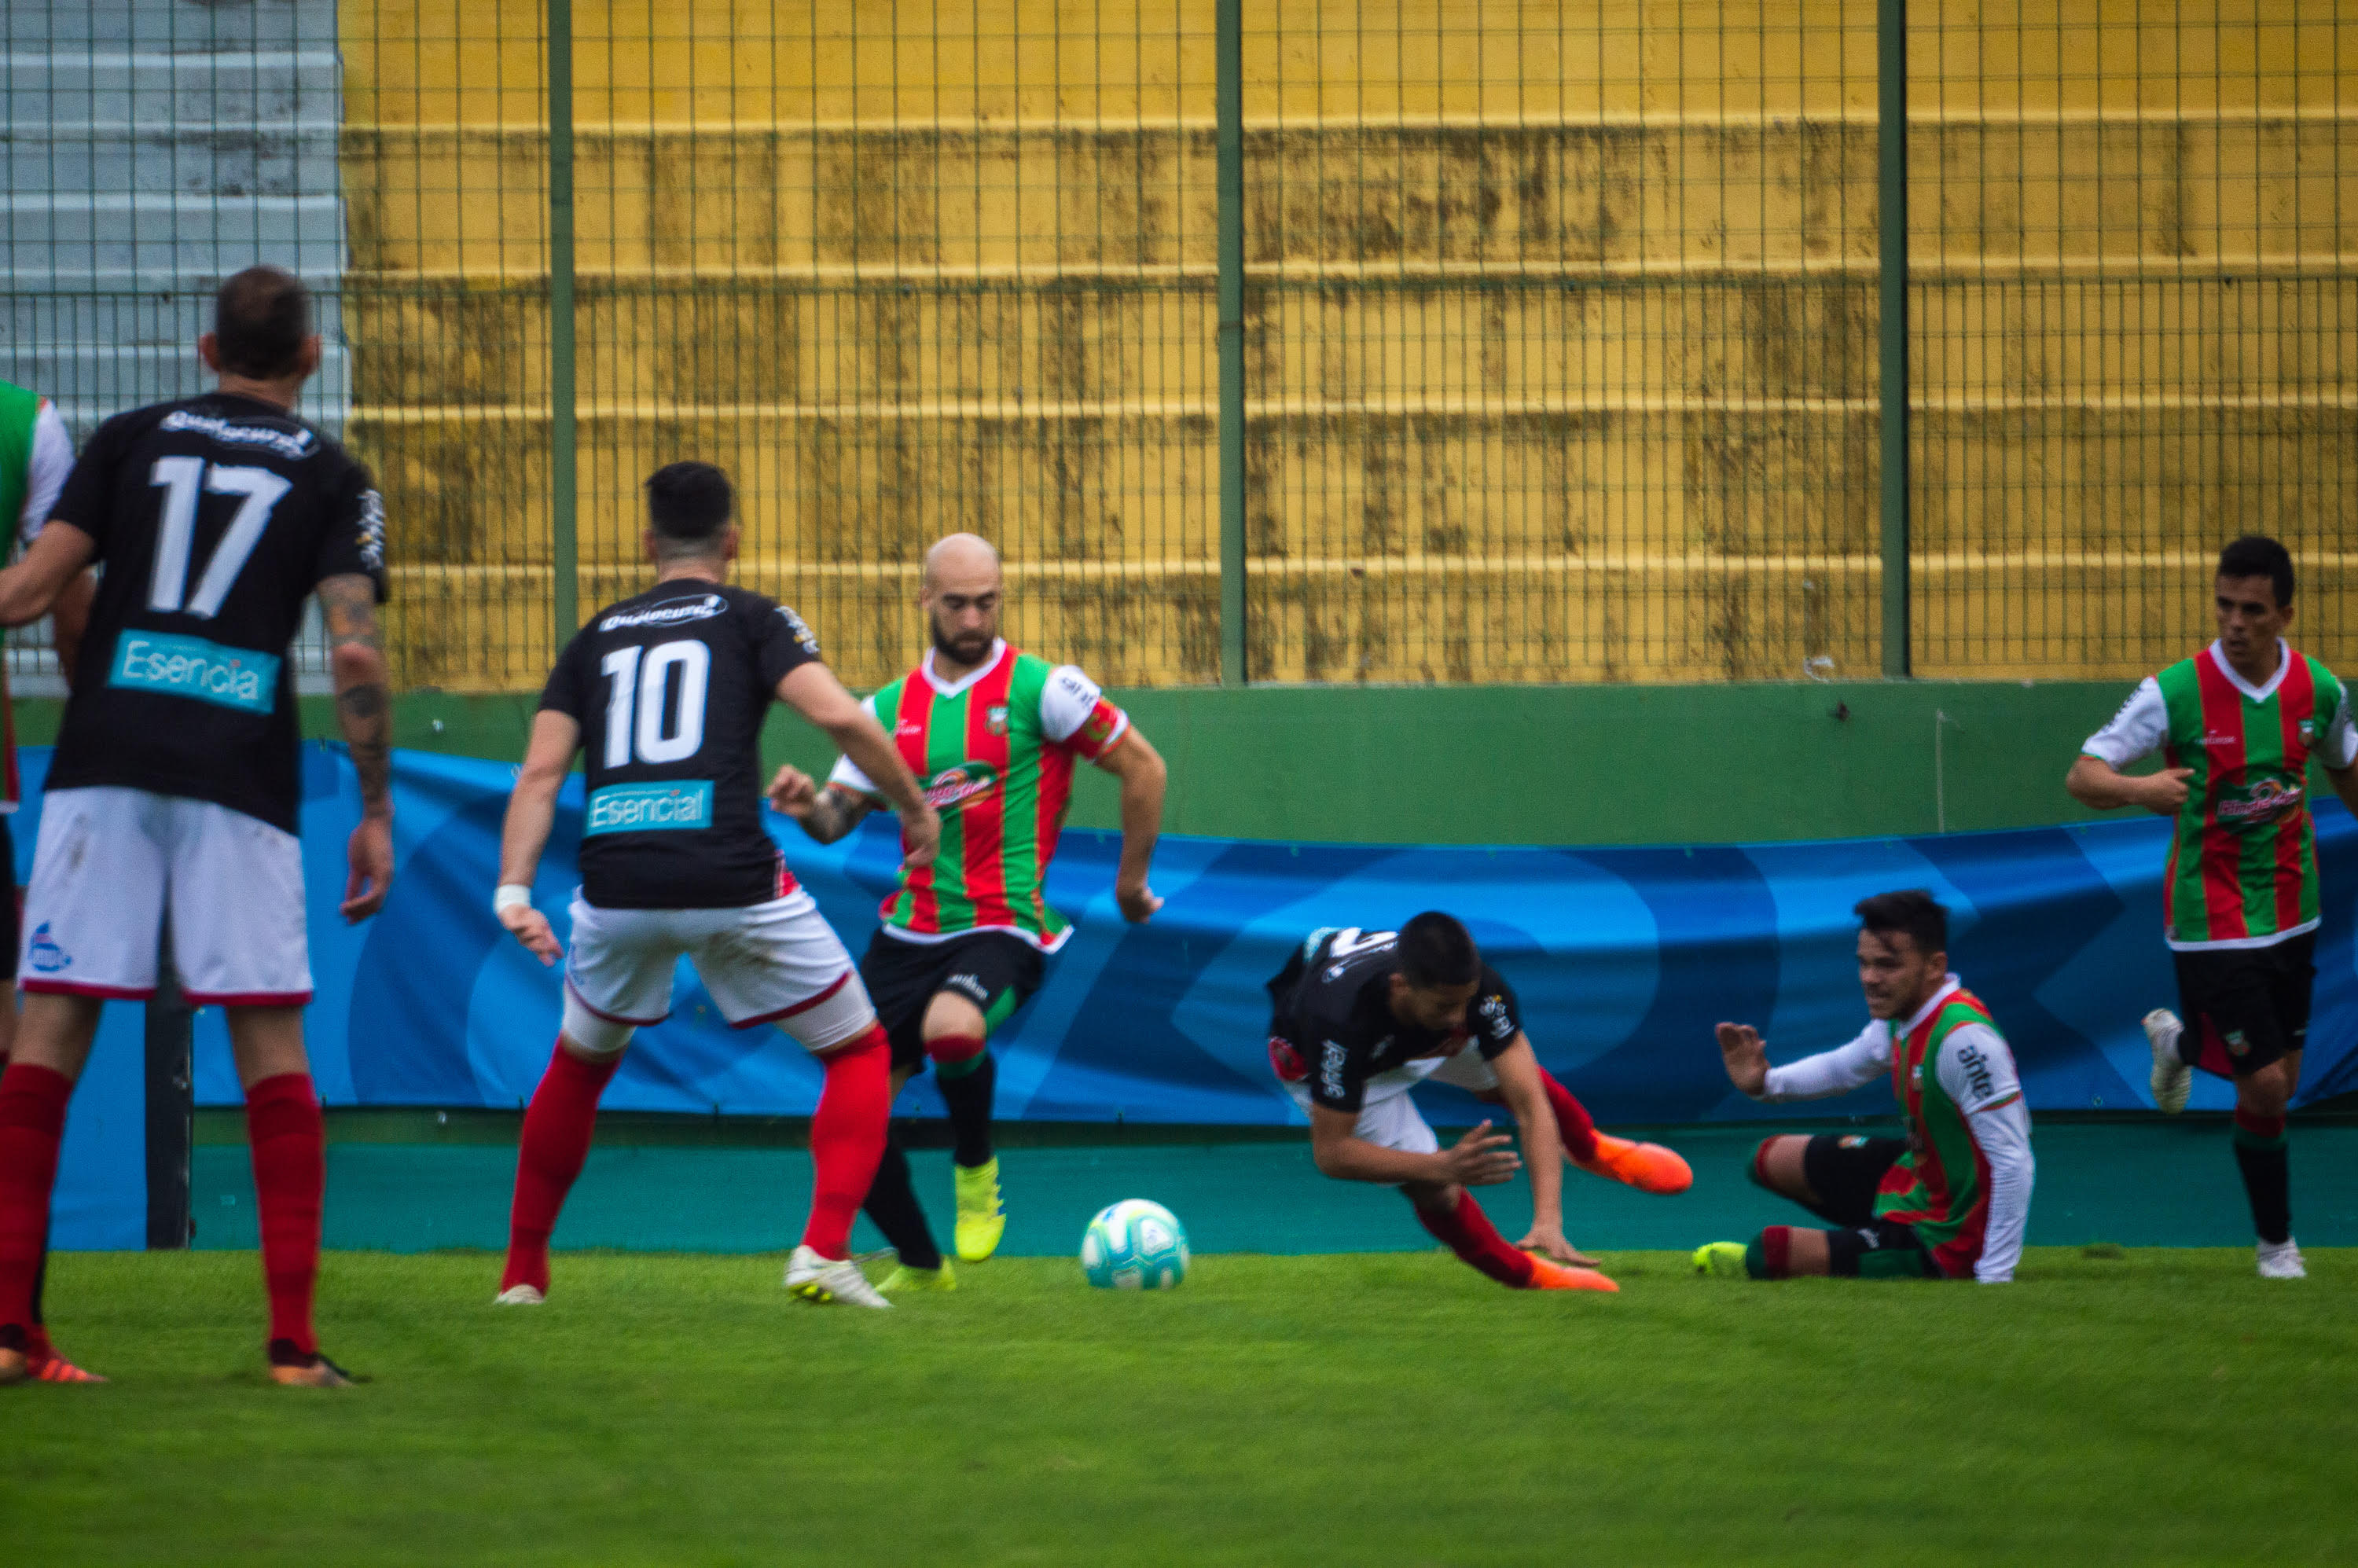 Facundo Tealde se lleva el balón ante varios futbolistas adversarios. Deportivo ganó y le sacó 5 puntos a sus más cercanos perseguidores-.